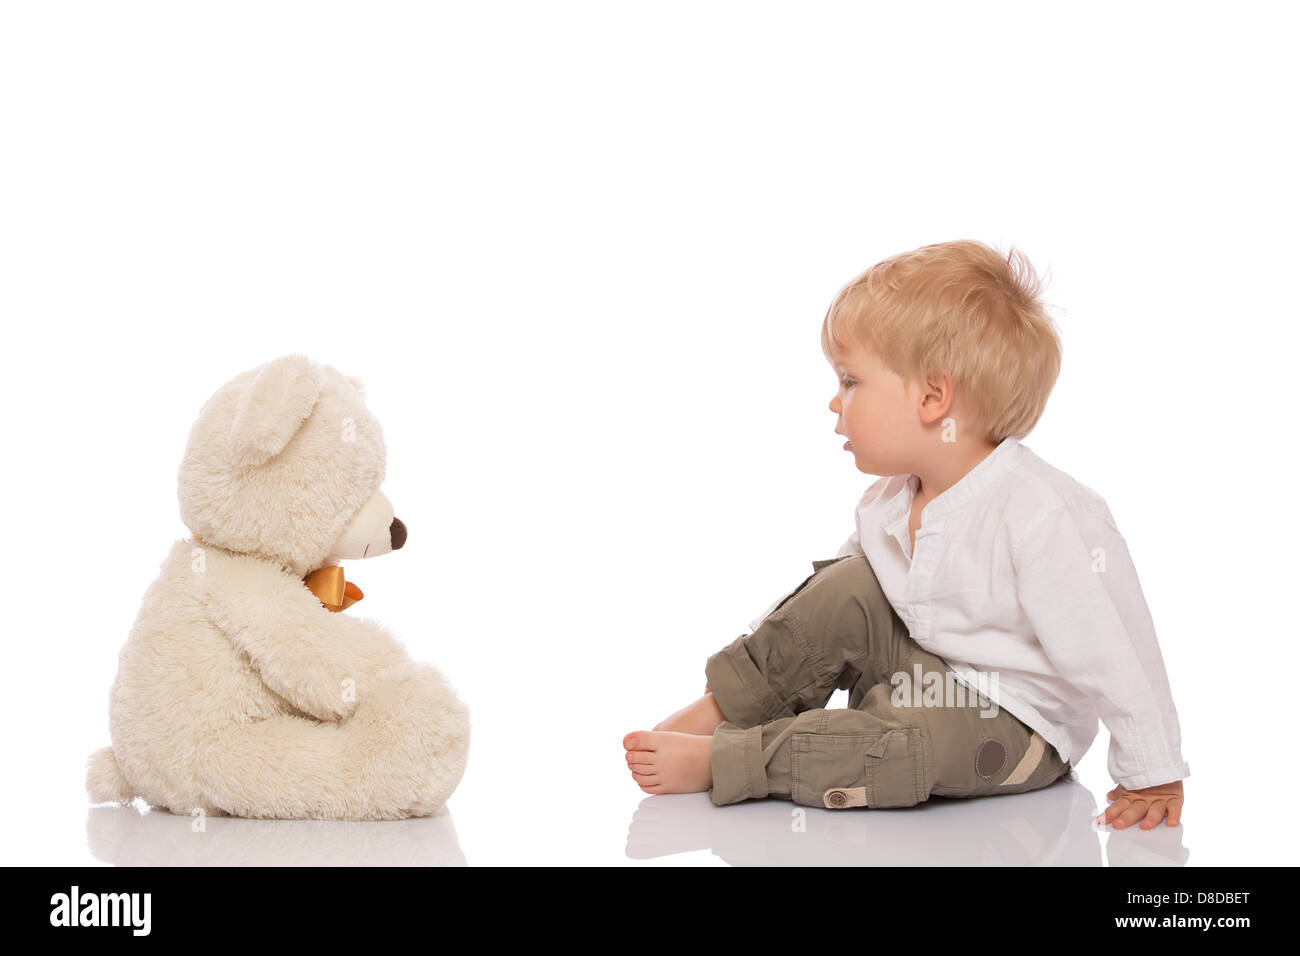 Petit garçon aux cheveux blonds assis sur le plancher et son ours en peluche. Isolé sur fond blanc. Banque D'Images